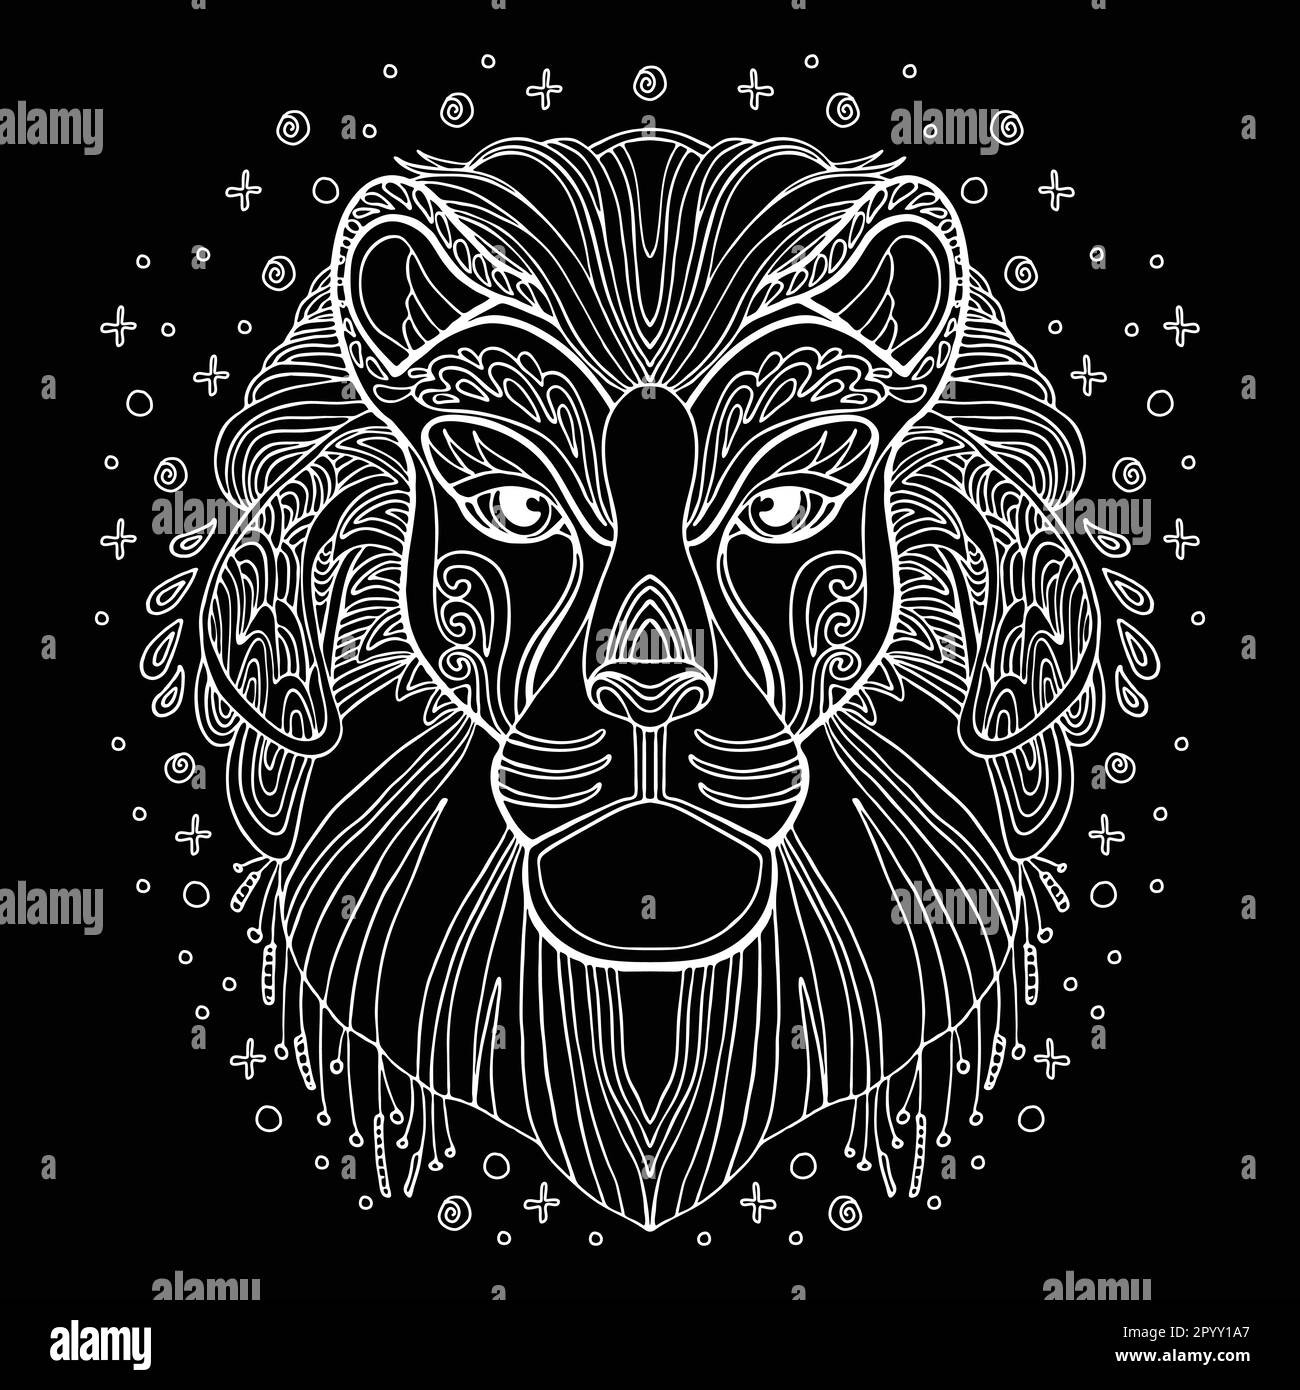 Vettore decorativo doodle ornamentale testa di leone. Illustrazione vettoriale astratta del contorno bianco leone isolato su sfondo nero. Illustrazione per adulti Illustrazione Vettoriale